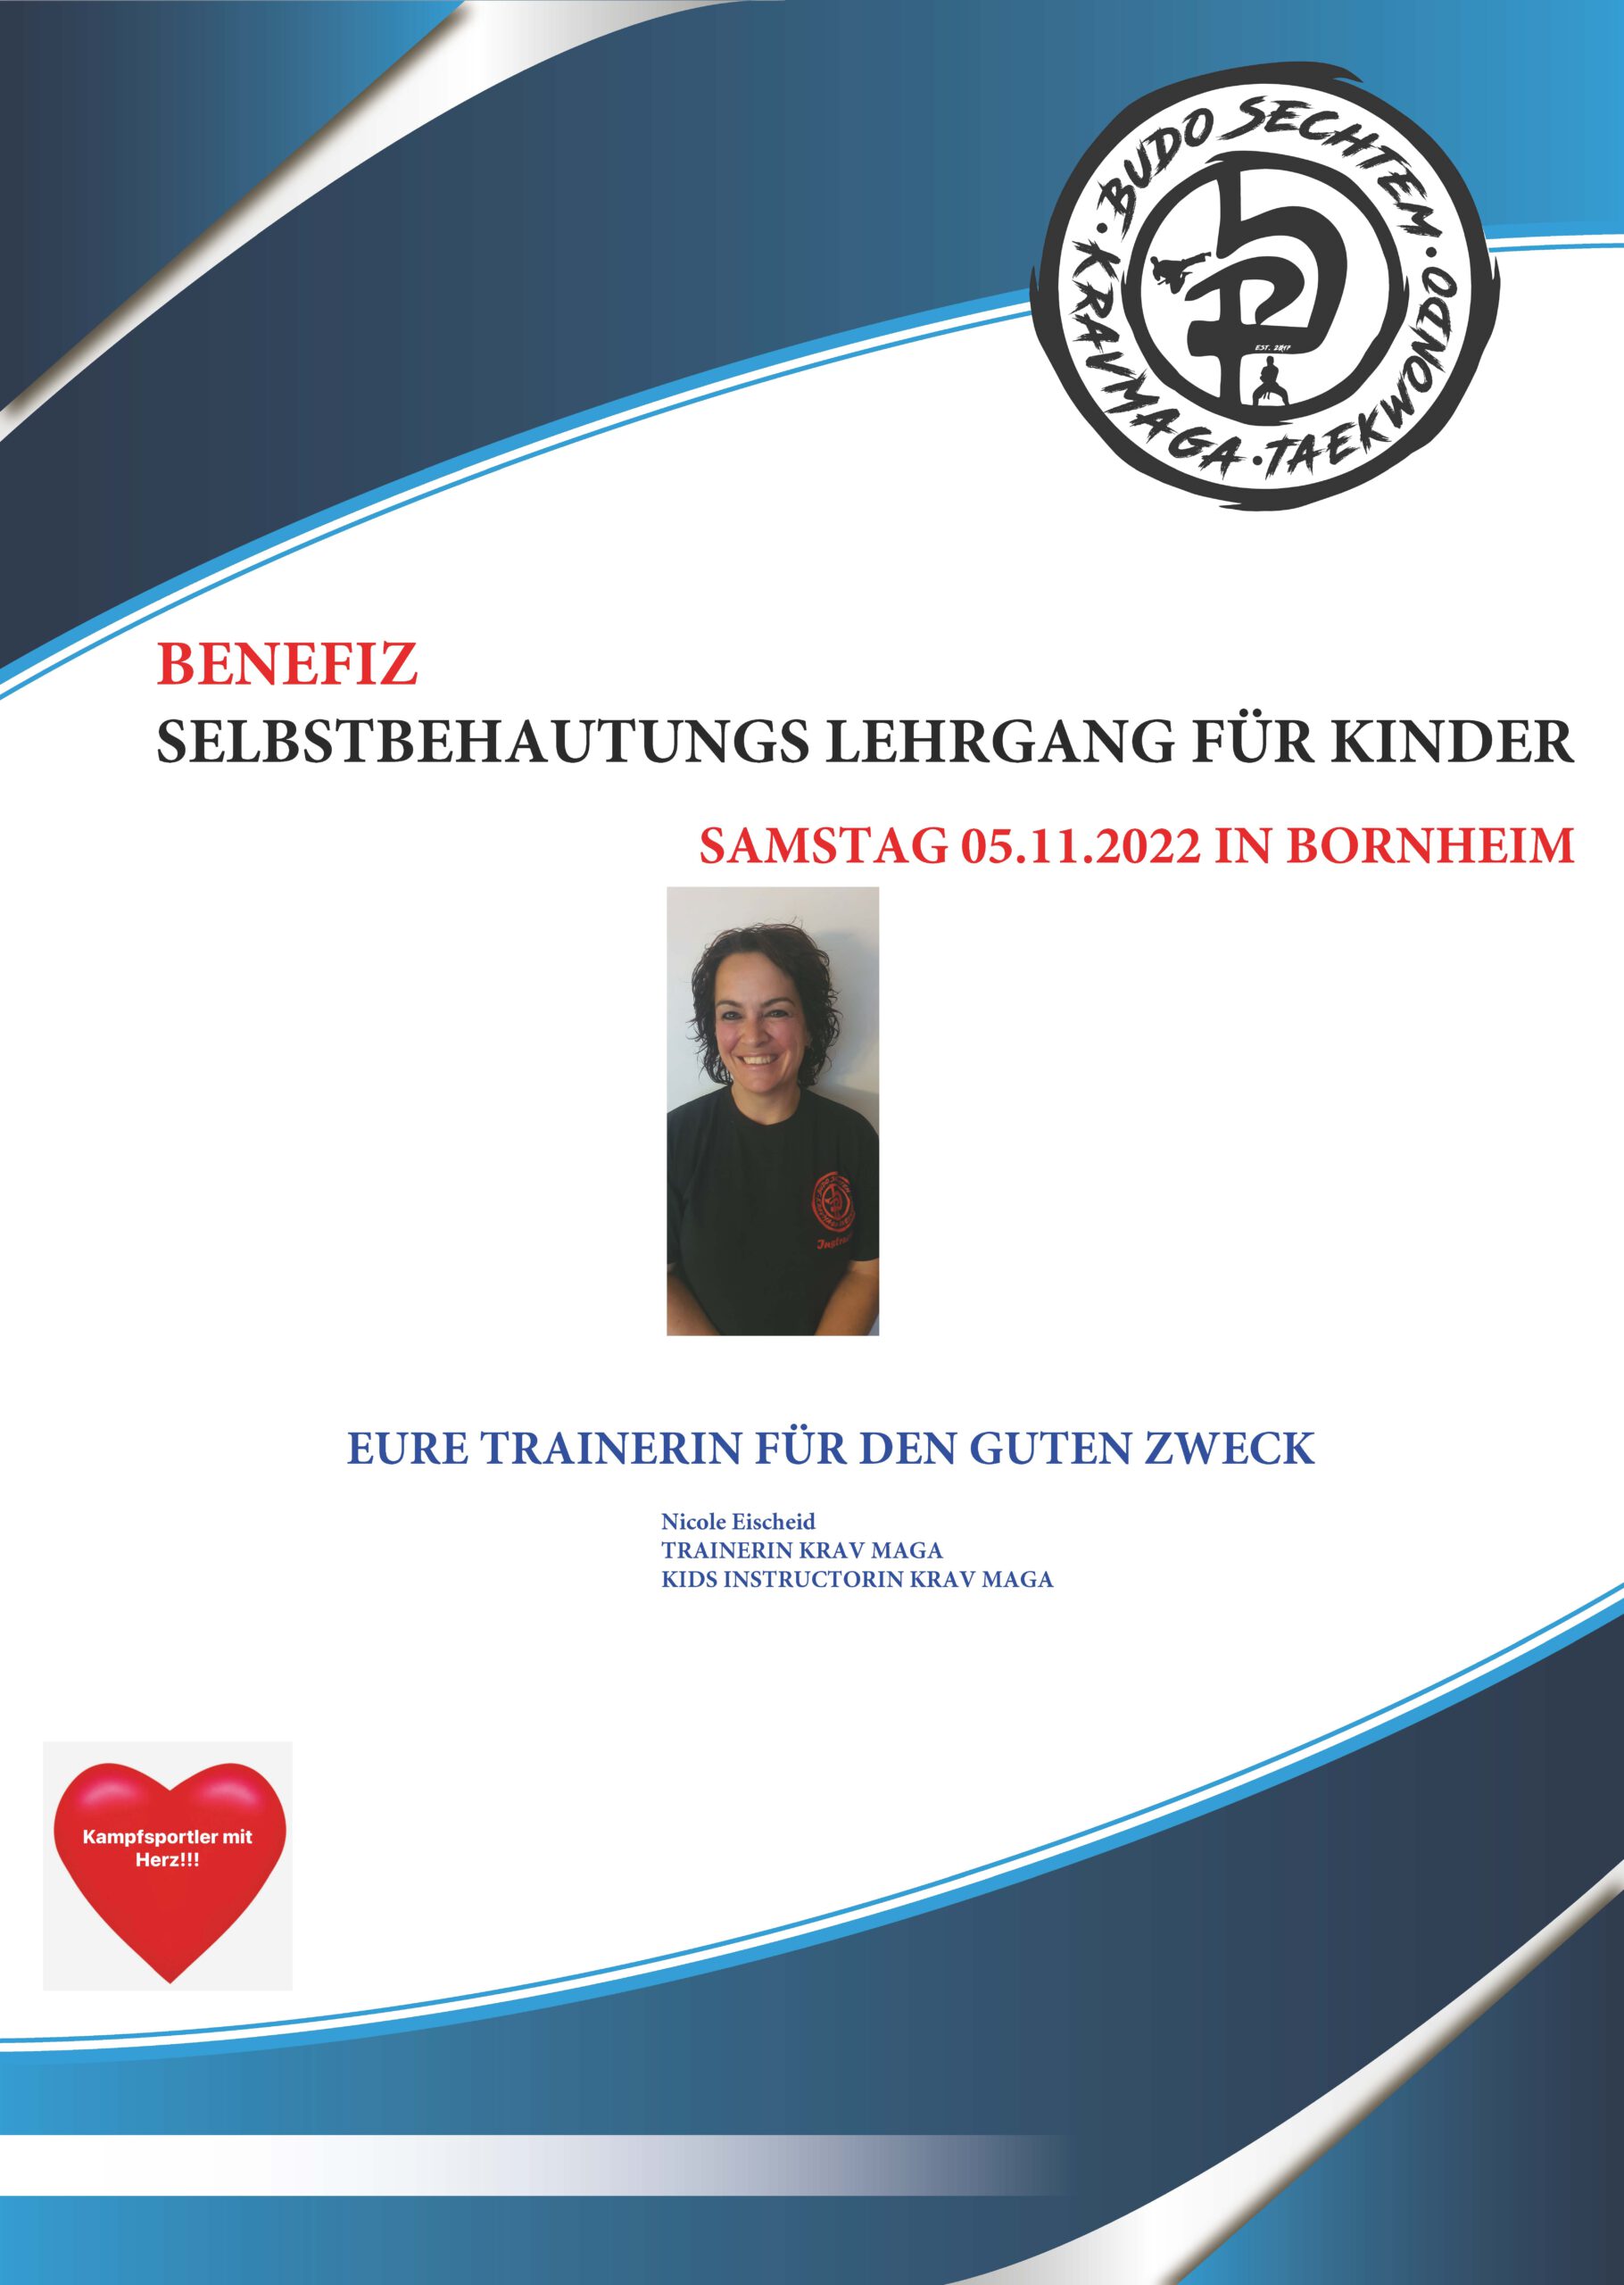 Budo Sechtem - Spendenlehrgang - Selbstbehauptung für Kinder am 5. November 2022 in Bornheim - Trainerin Nicole Eischeid